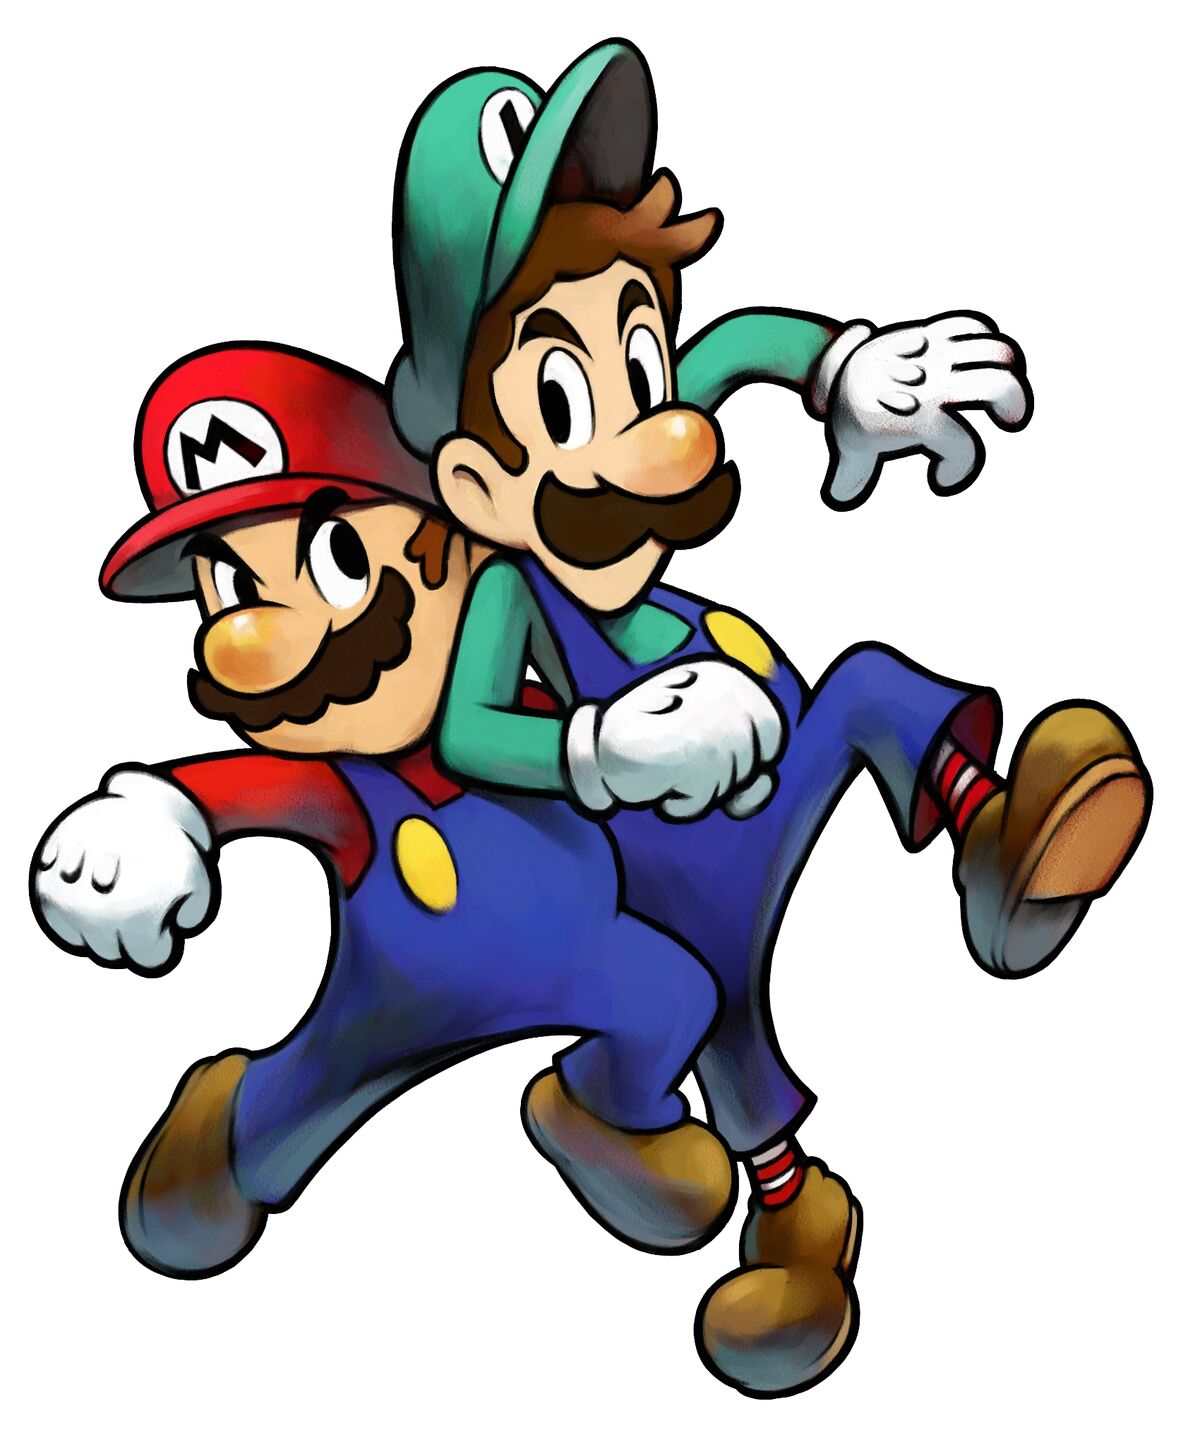 Luigi - Marioverse Wiki